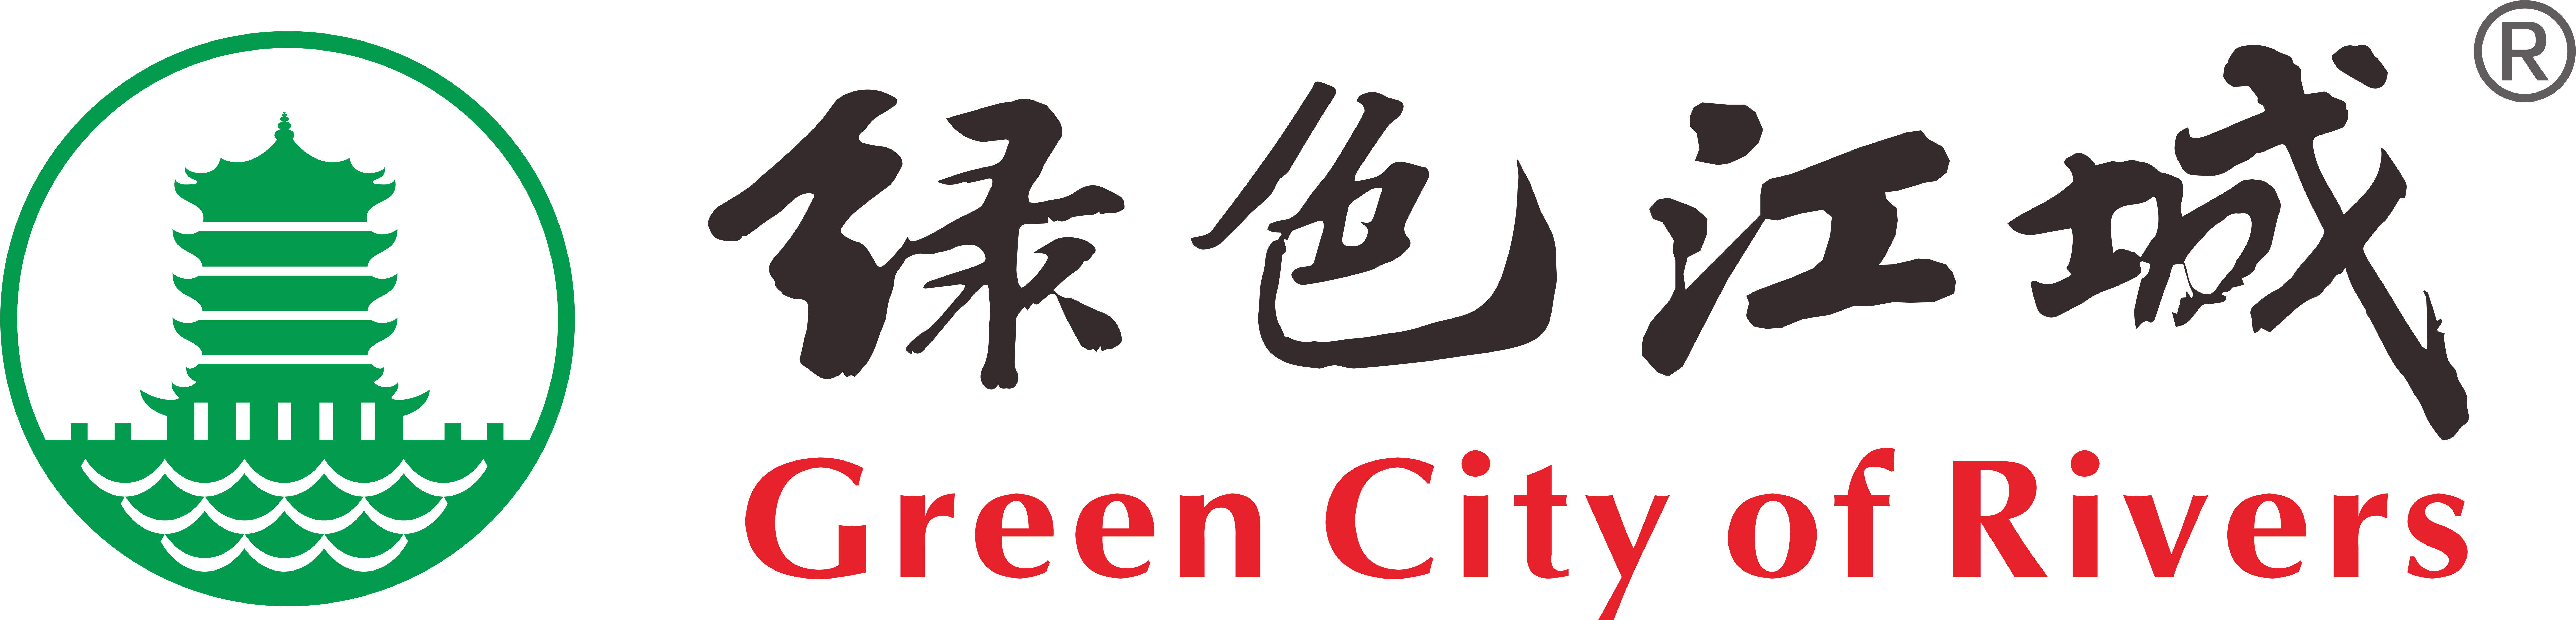 个人志愿者-武汉环保社会组织“绿色江城”